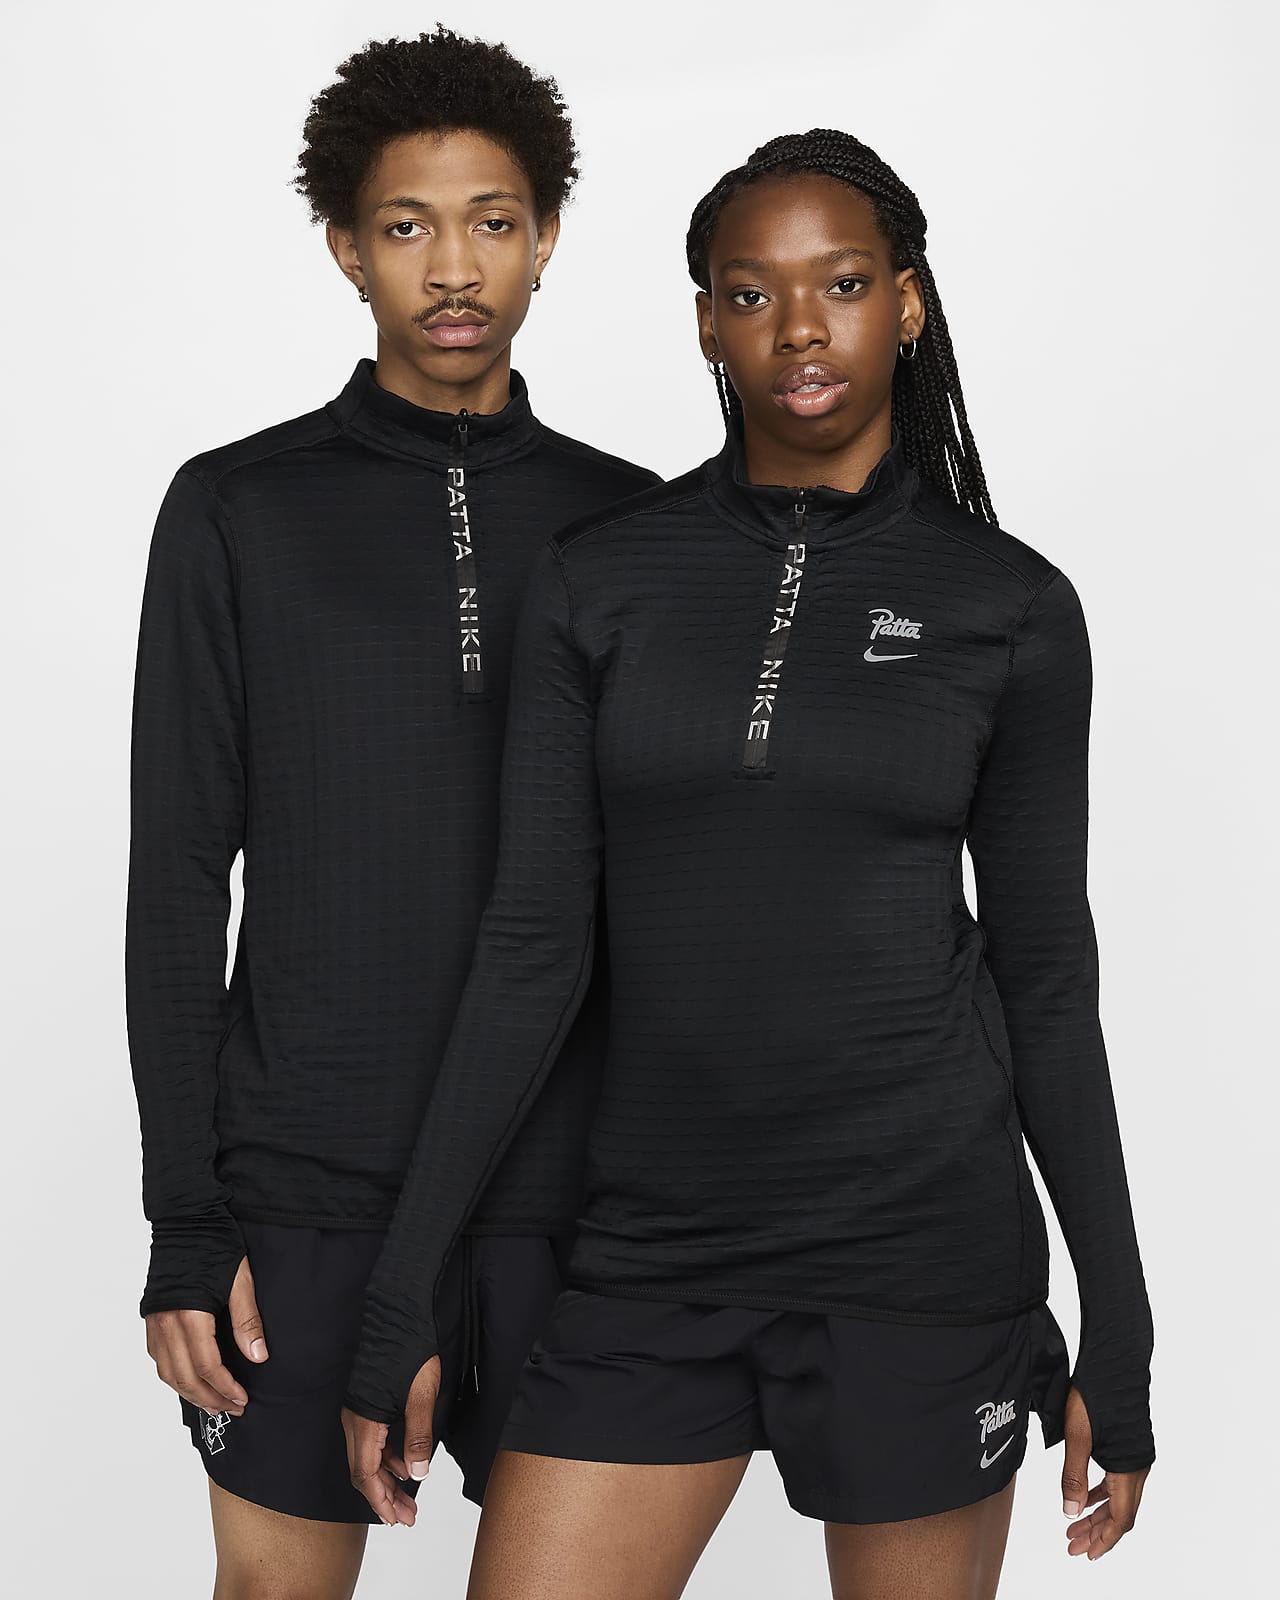 Μακρυμάνικη μπλούζα με φερμουάρ στο 1/2 του μήκους Nike x Patta Running Team